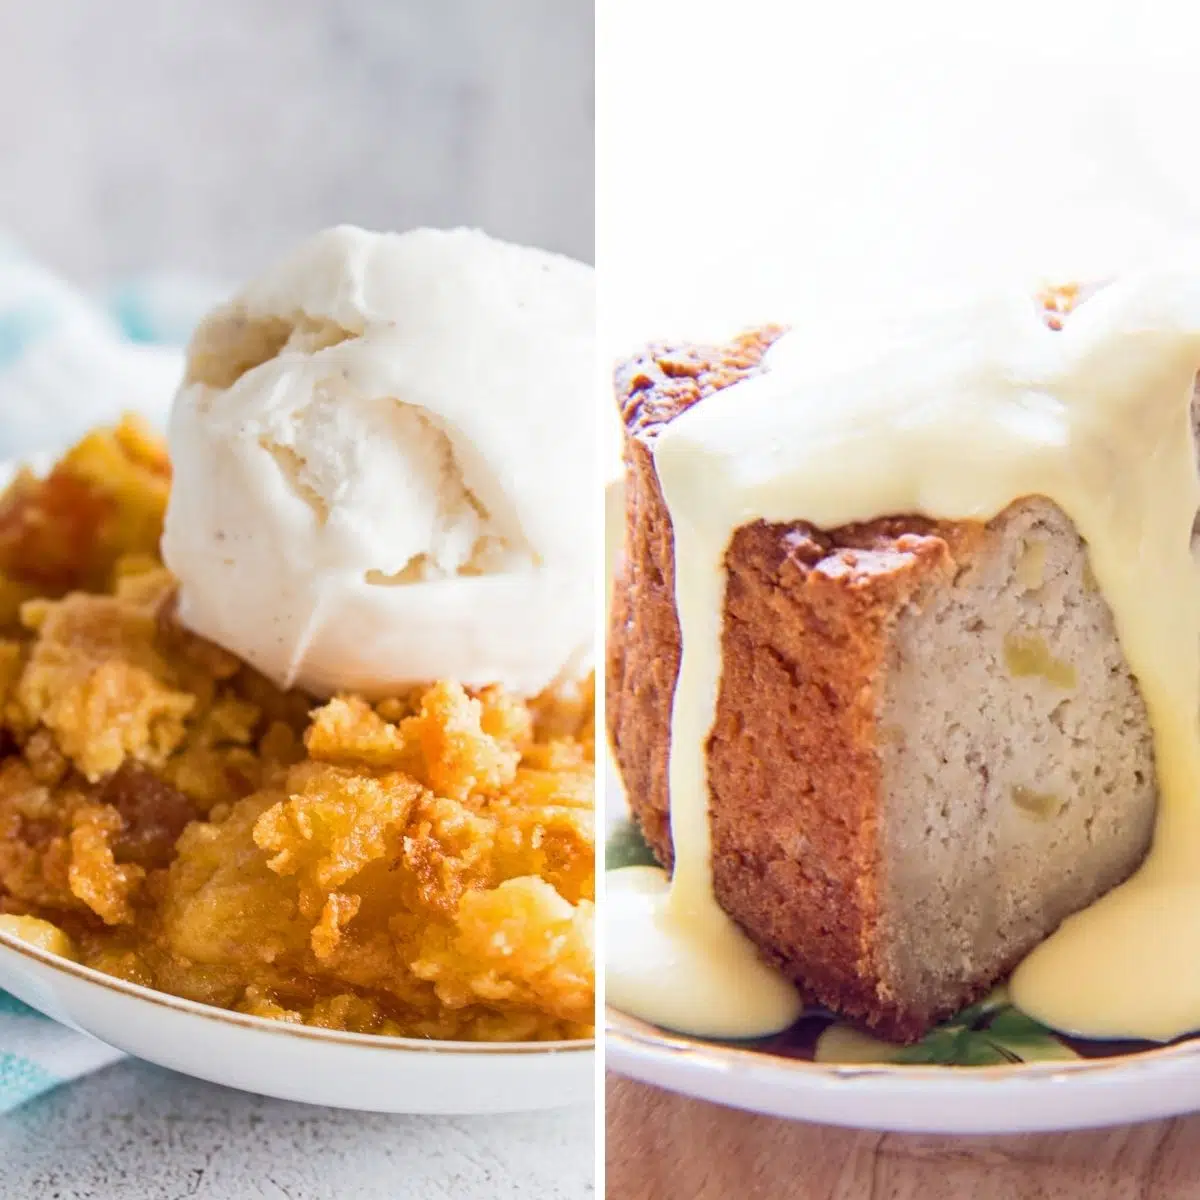 Las mejores recetas de pastel de manzana para hornear en cualquier época del año con dos recetas favoritas una al lado de la otra.